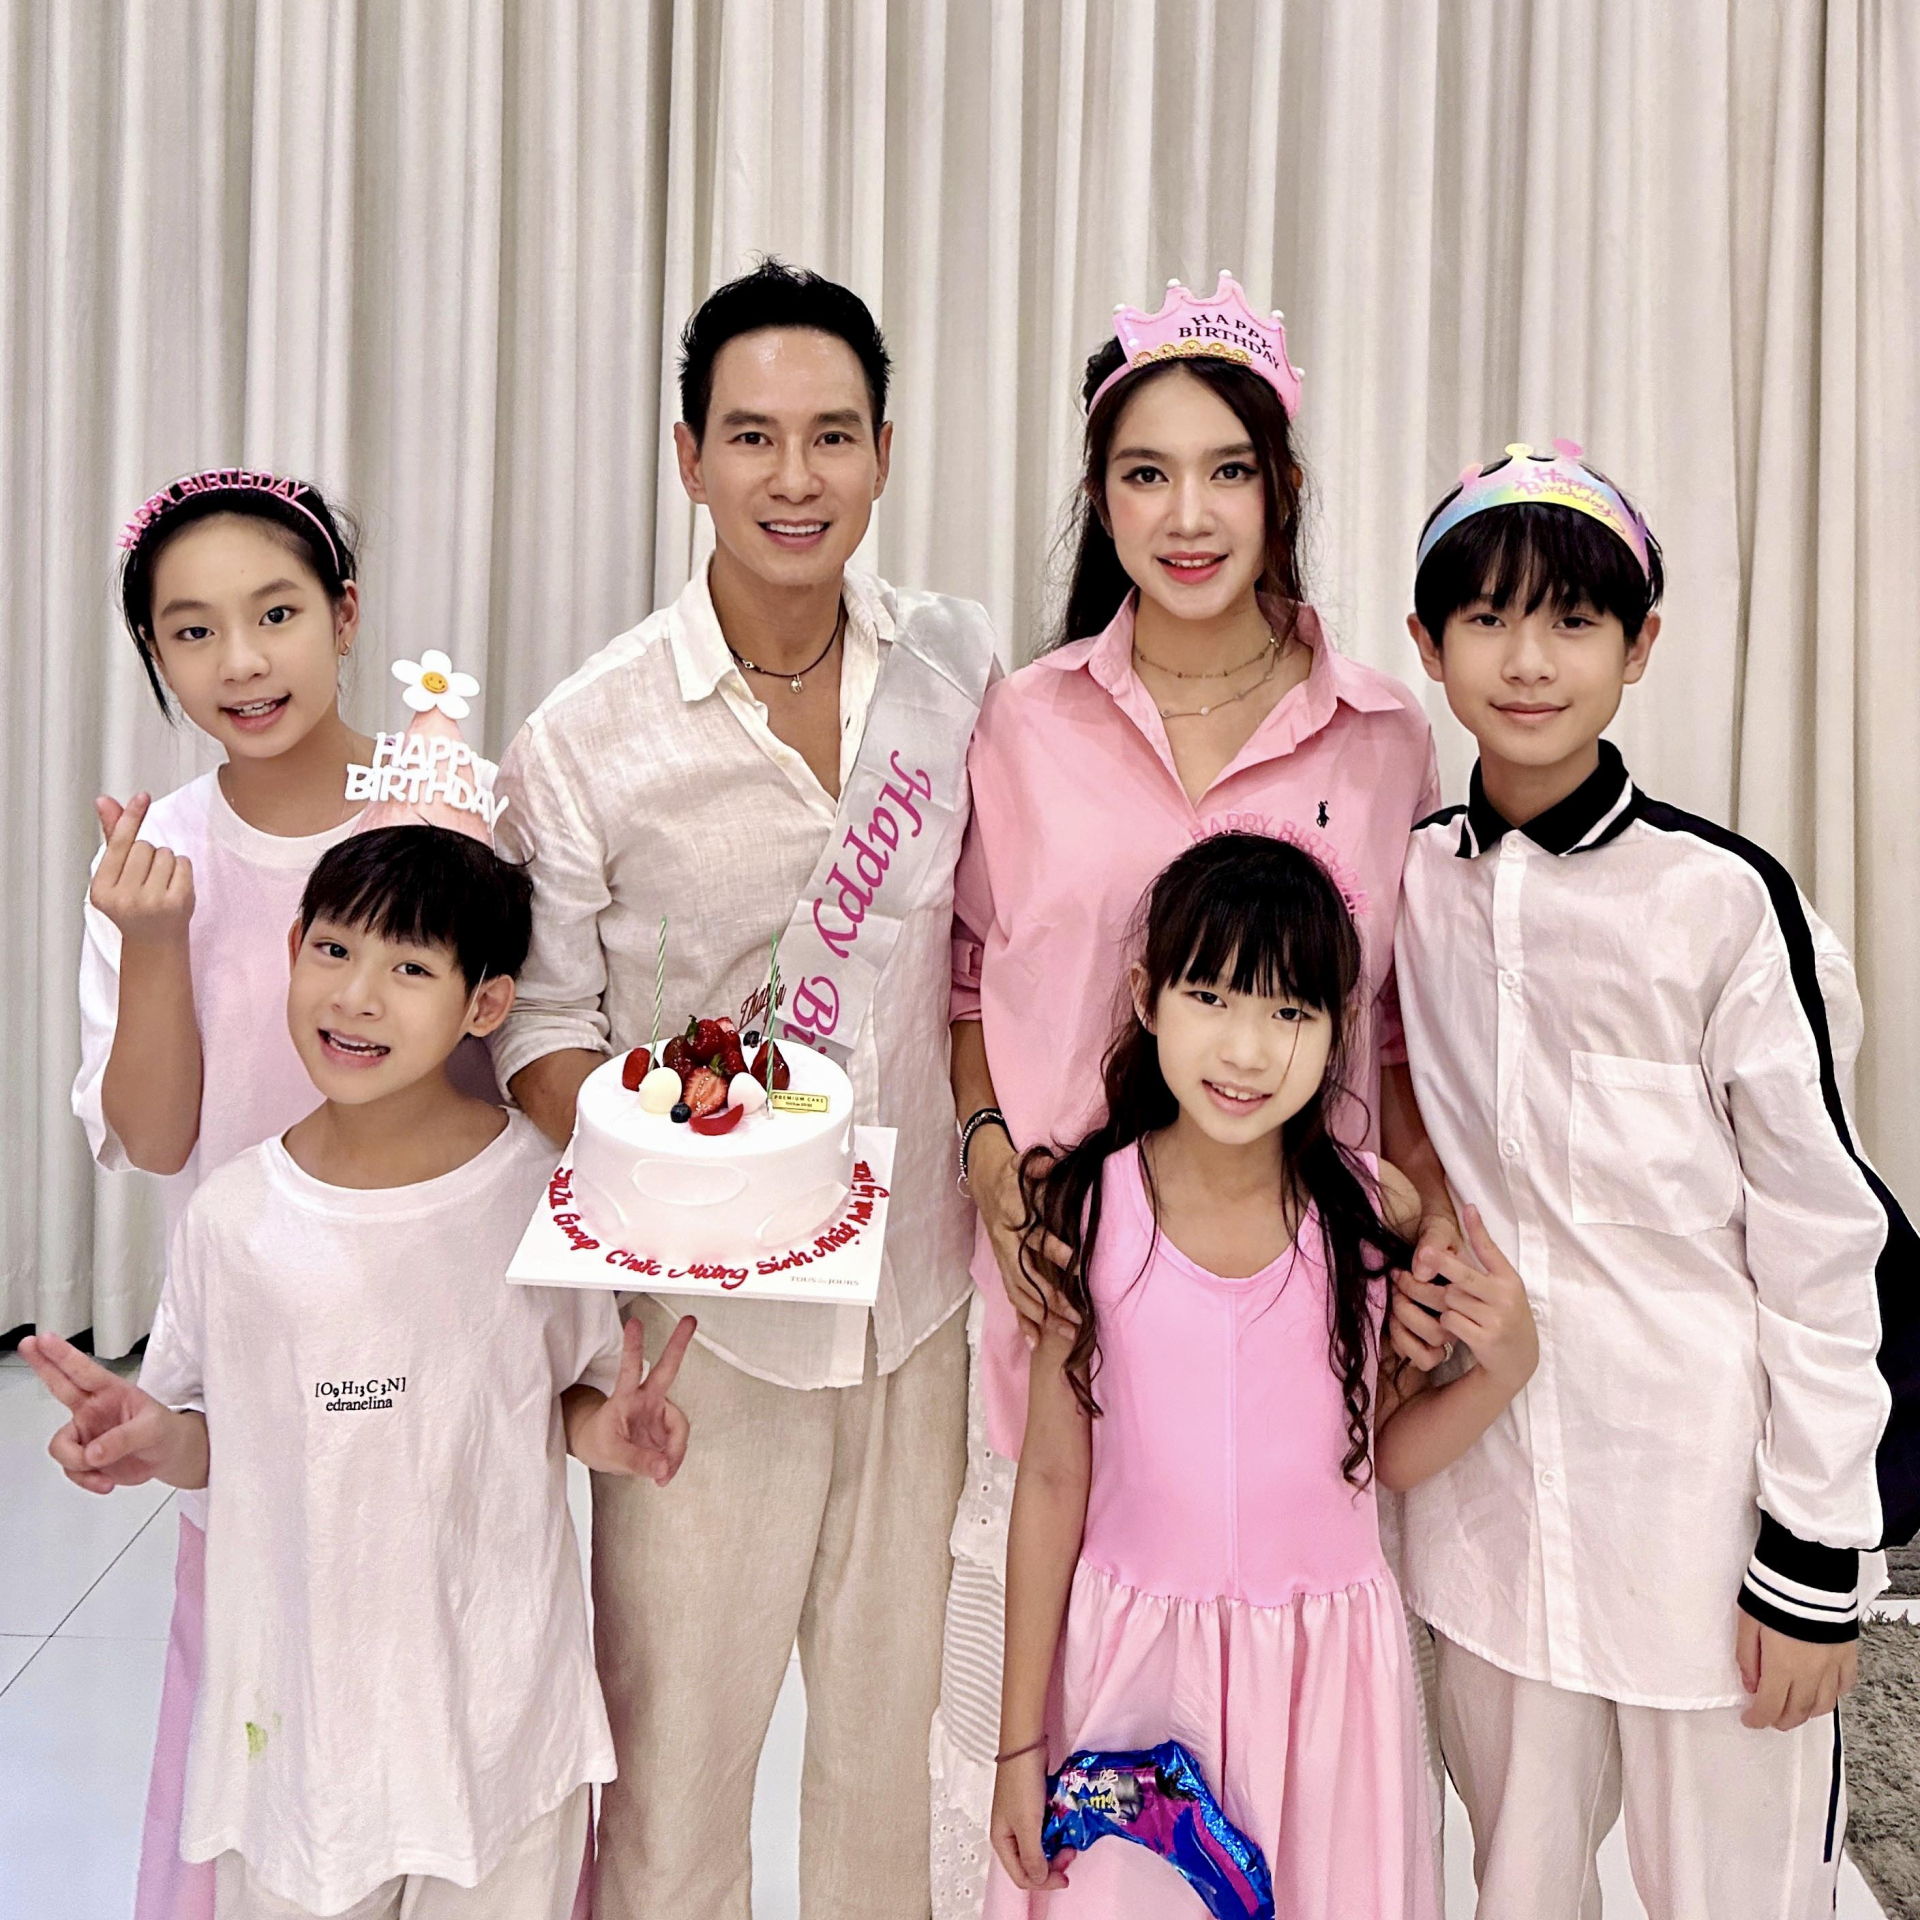 Gia đình Lý Hải-Minh Hà dành trọn vẹn ngày sinh nhật để làm từ thiện - ảnh 1